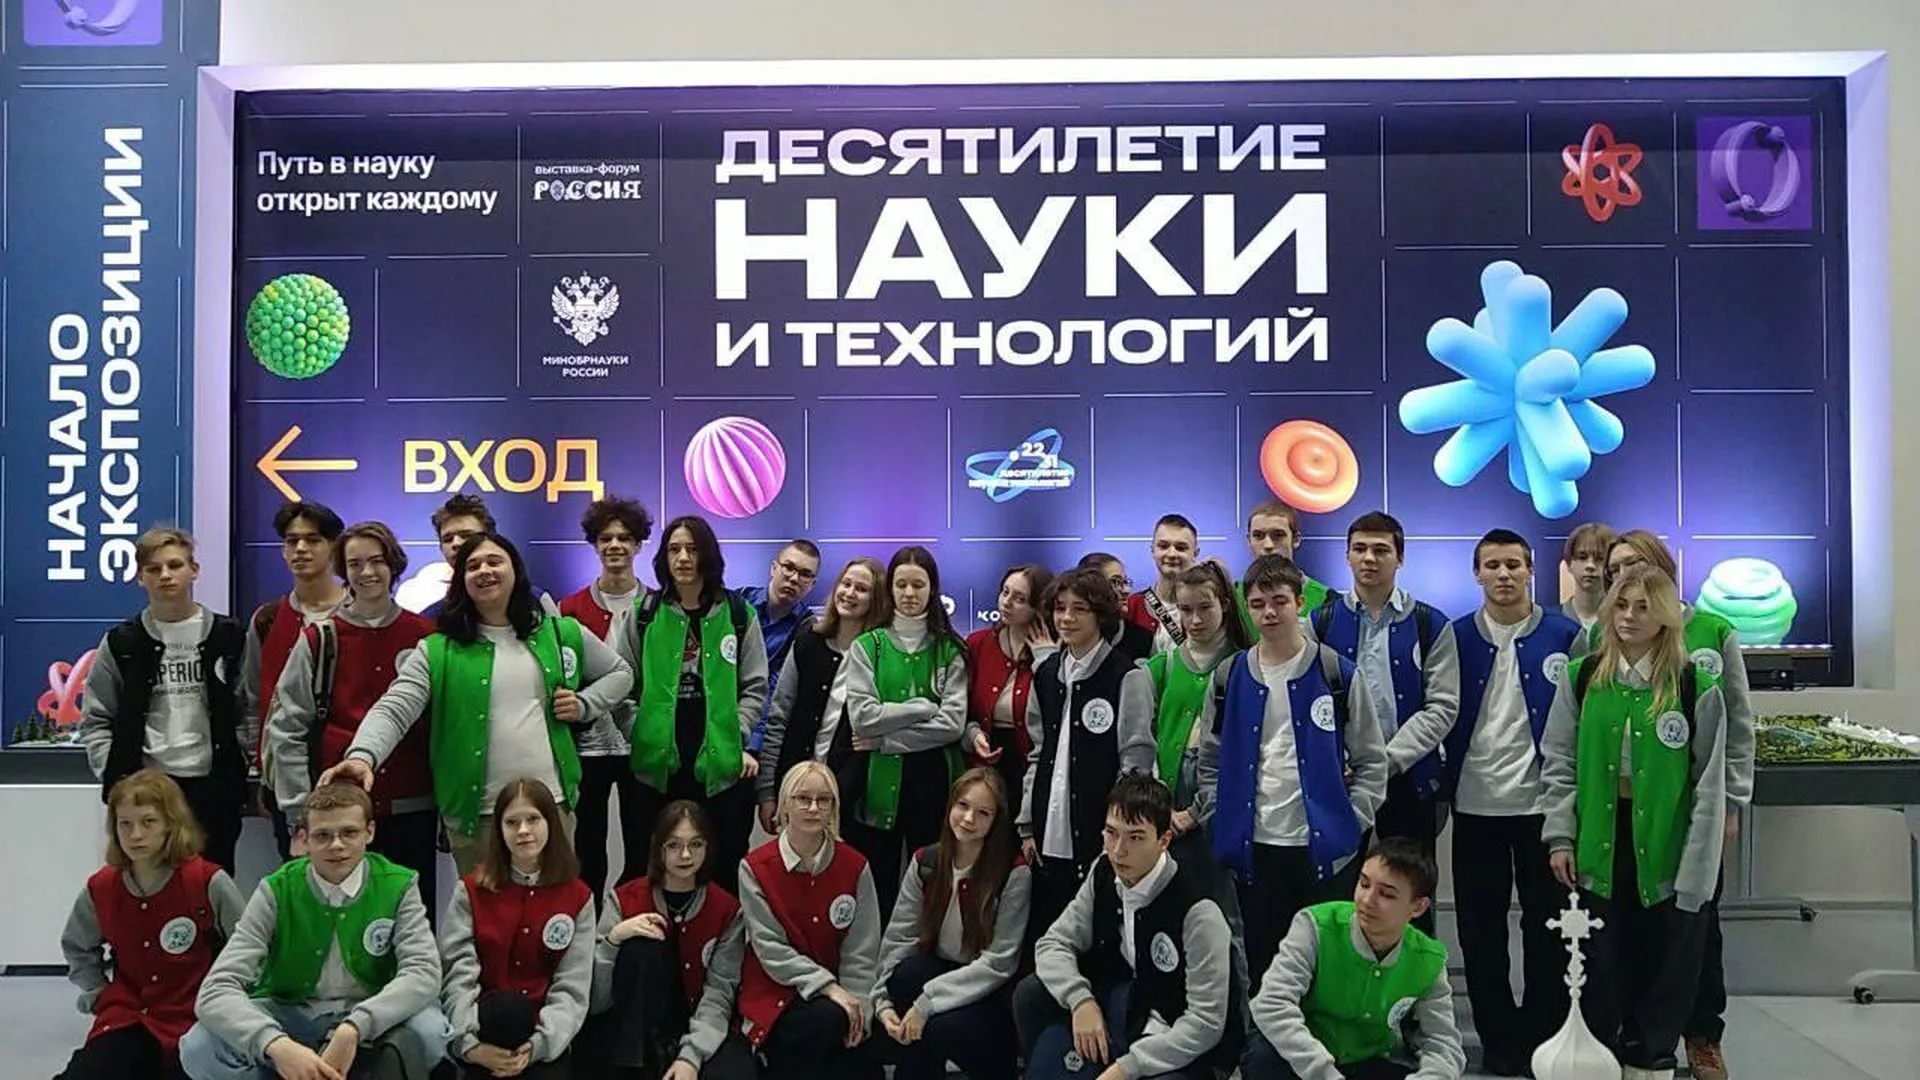 Более ста пятидесяти школьников из Подмосковья приняли участие в Дне науки на выставке «Россия»